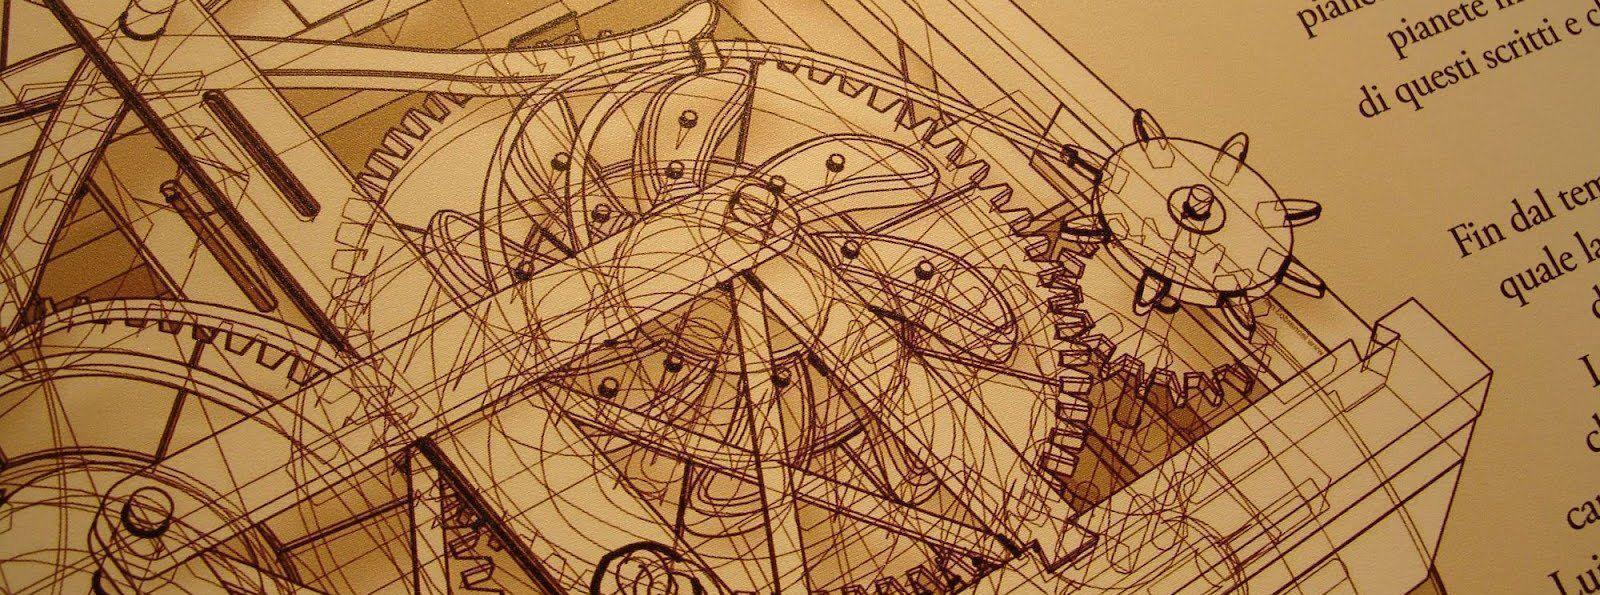 Leonardo da Vinci Drawings Image 11. hdwallpaper